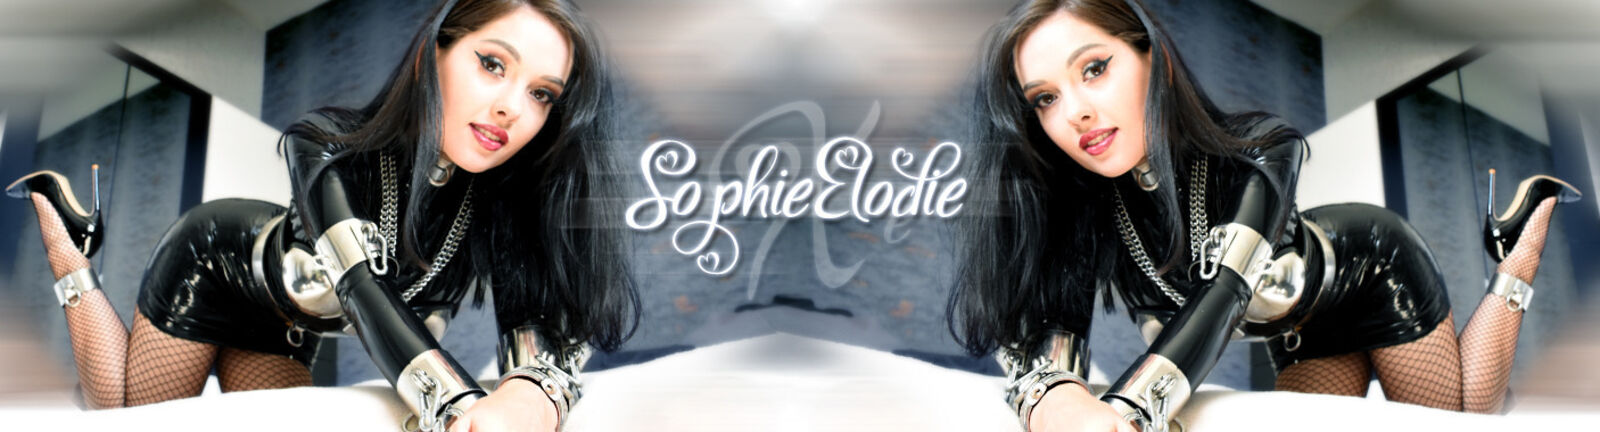 See Sophie Elodie profile